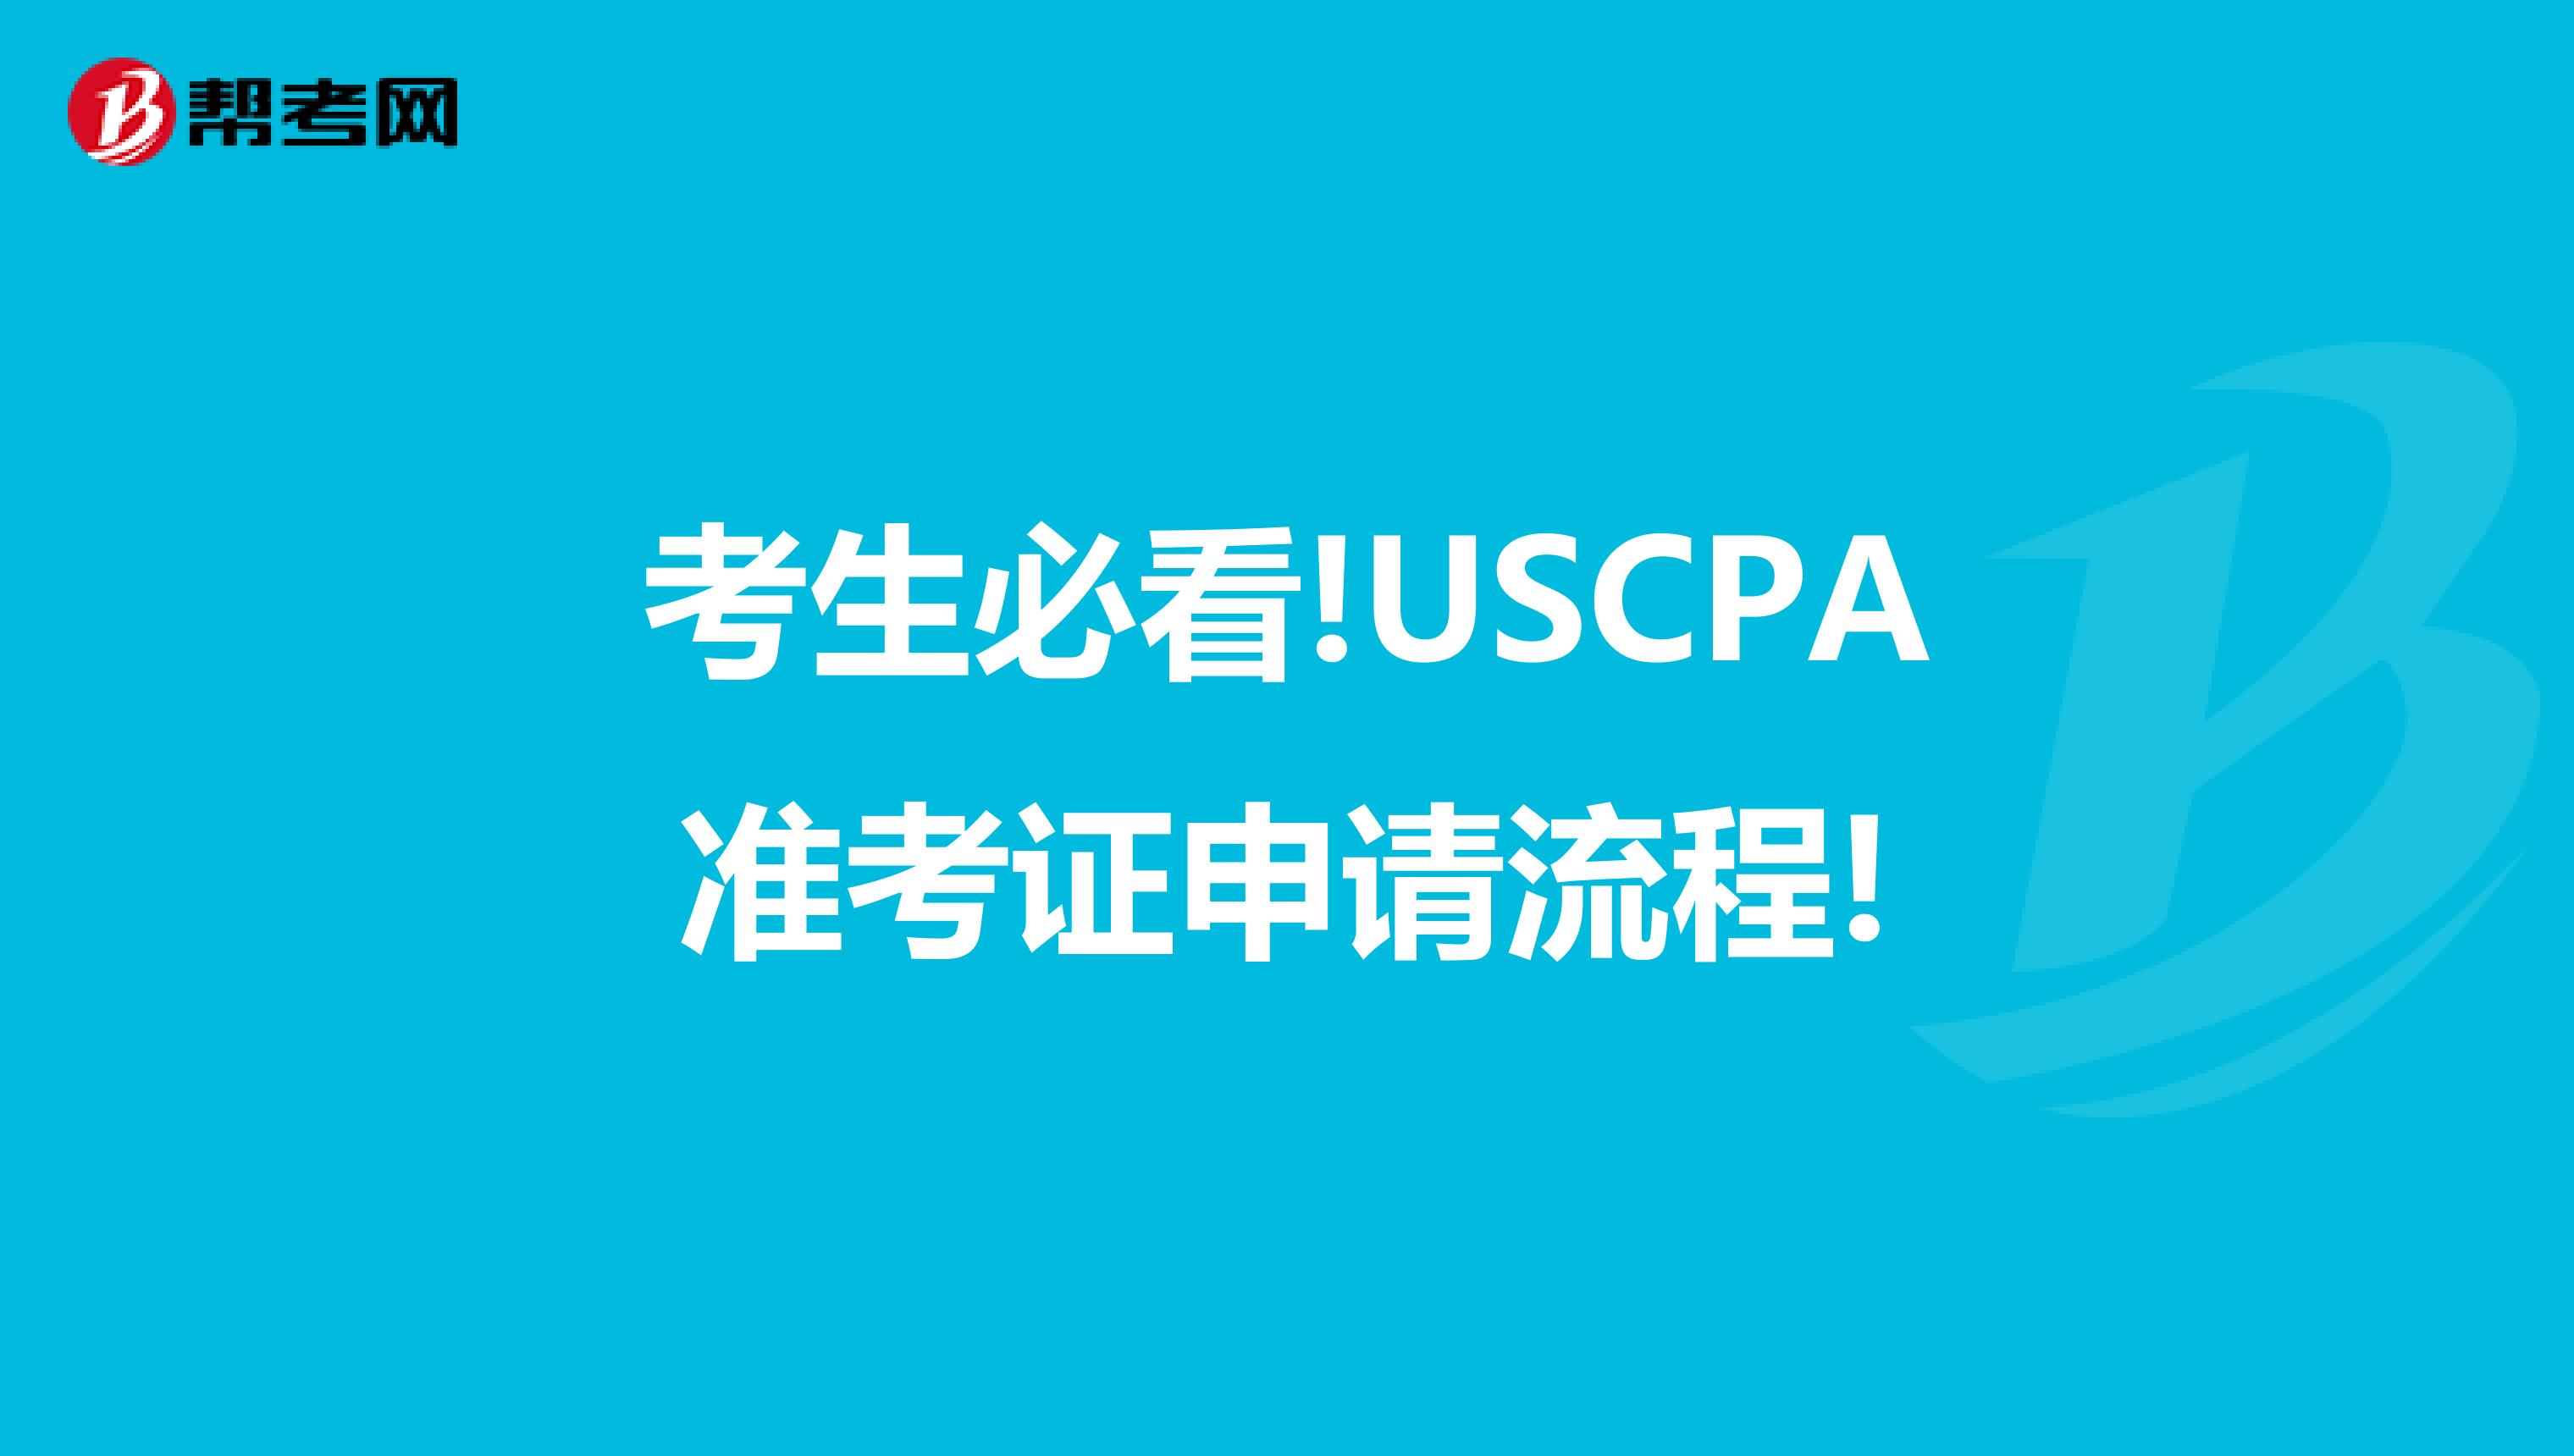 考生必看!USCPA准考证申请流程!